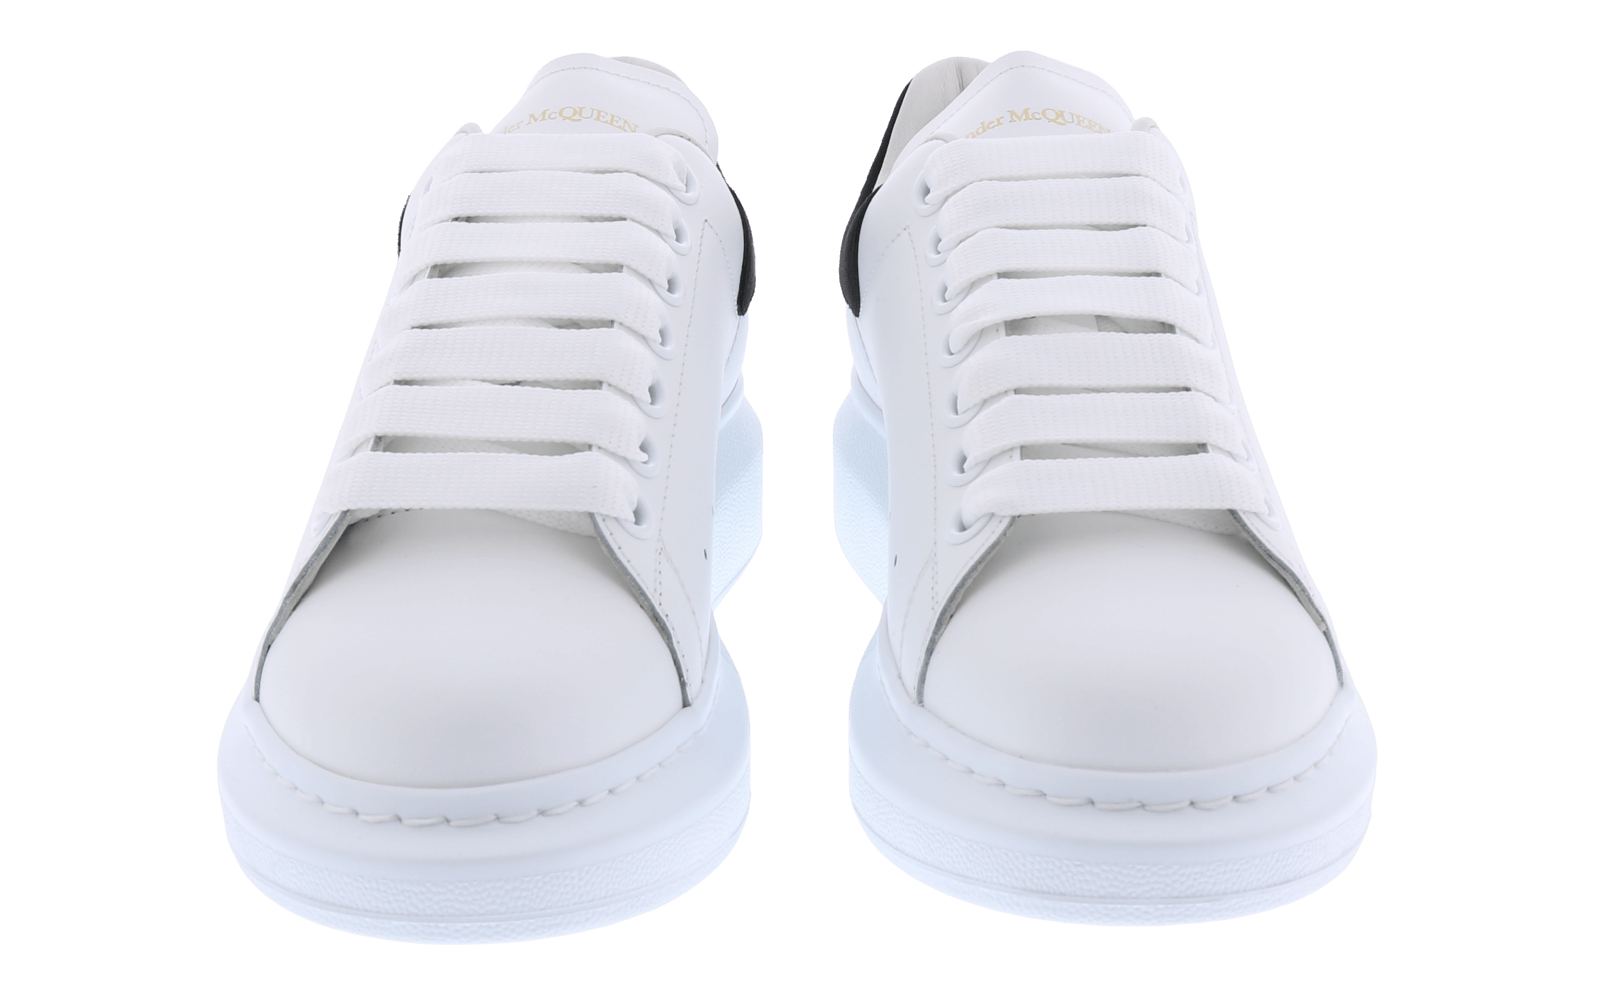 Dames Oversized Sneaker wit/zwart